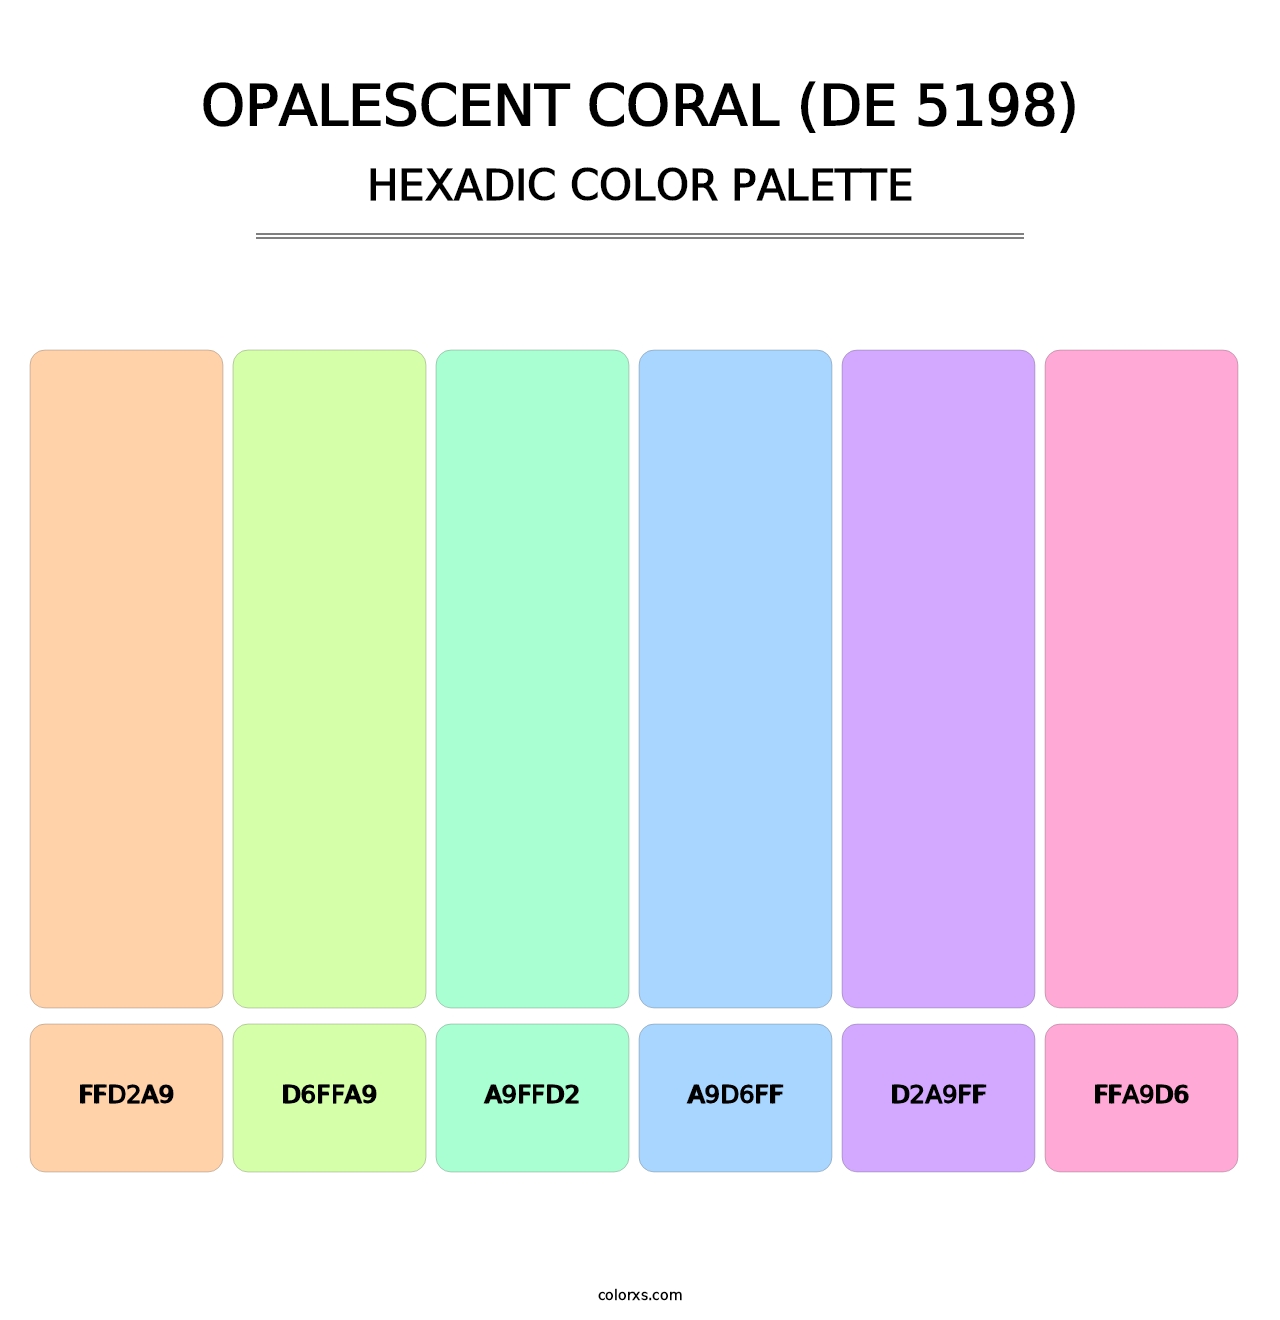 Opalescent Coral (DE 5198) - Hexadic Color Palette